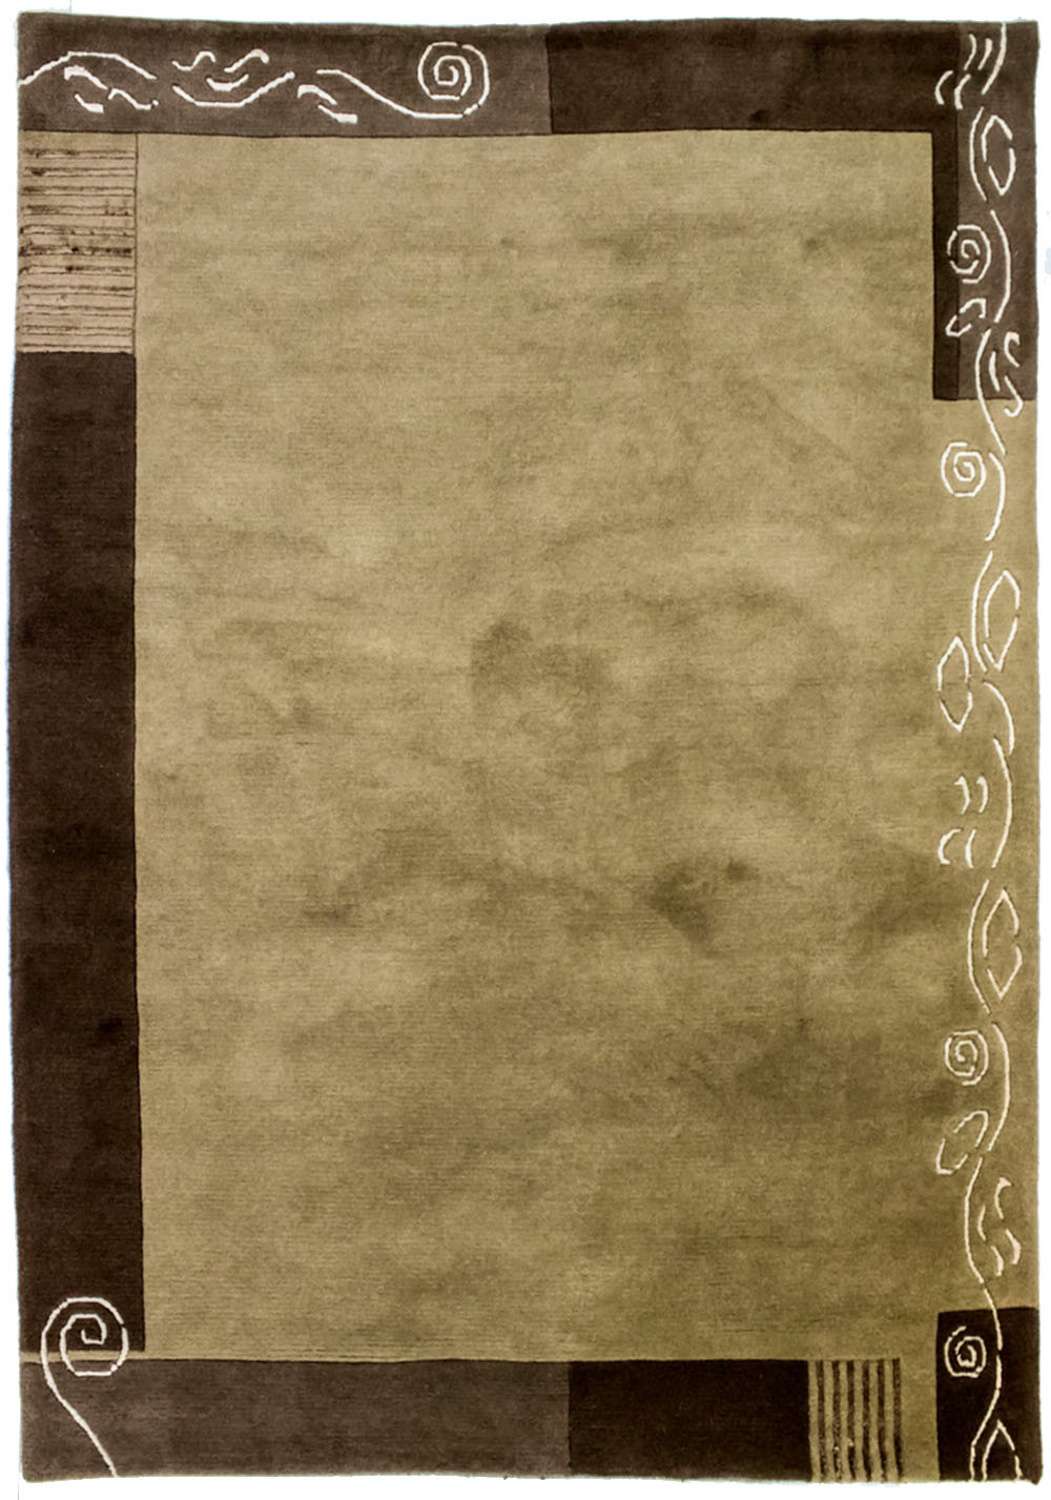 Nepálský koberec - 200 x 146 cm - béžová